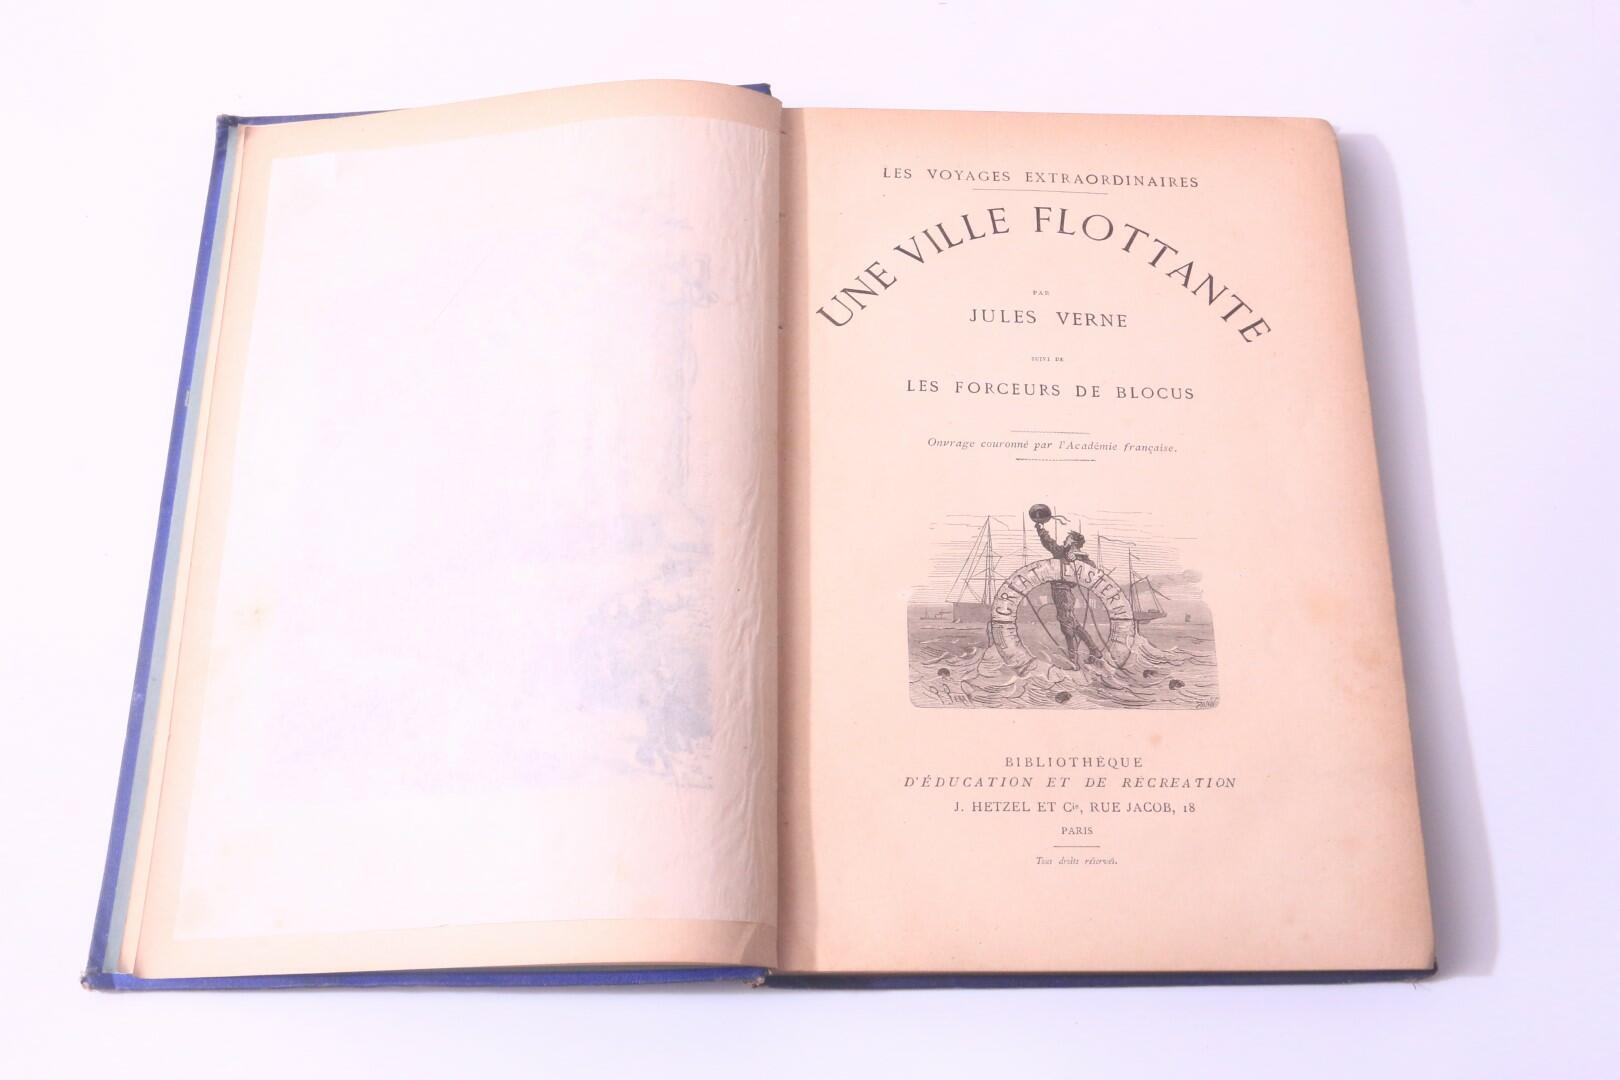 Jules Verne - Une Ville Flottante: Les Forceurs de Blocus - J. Hetzel, n.d. [1875?], Later Edition.